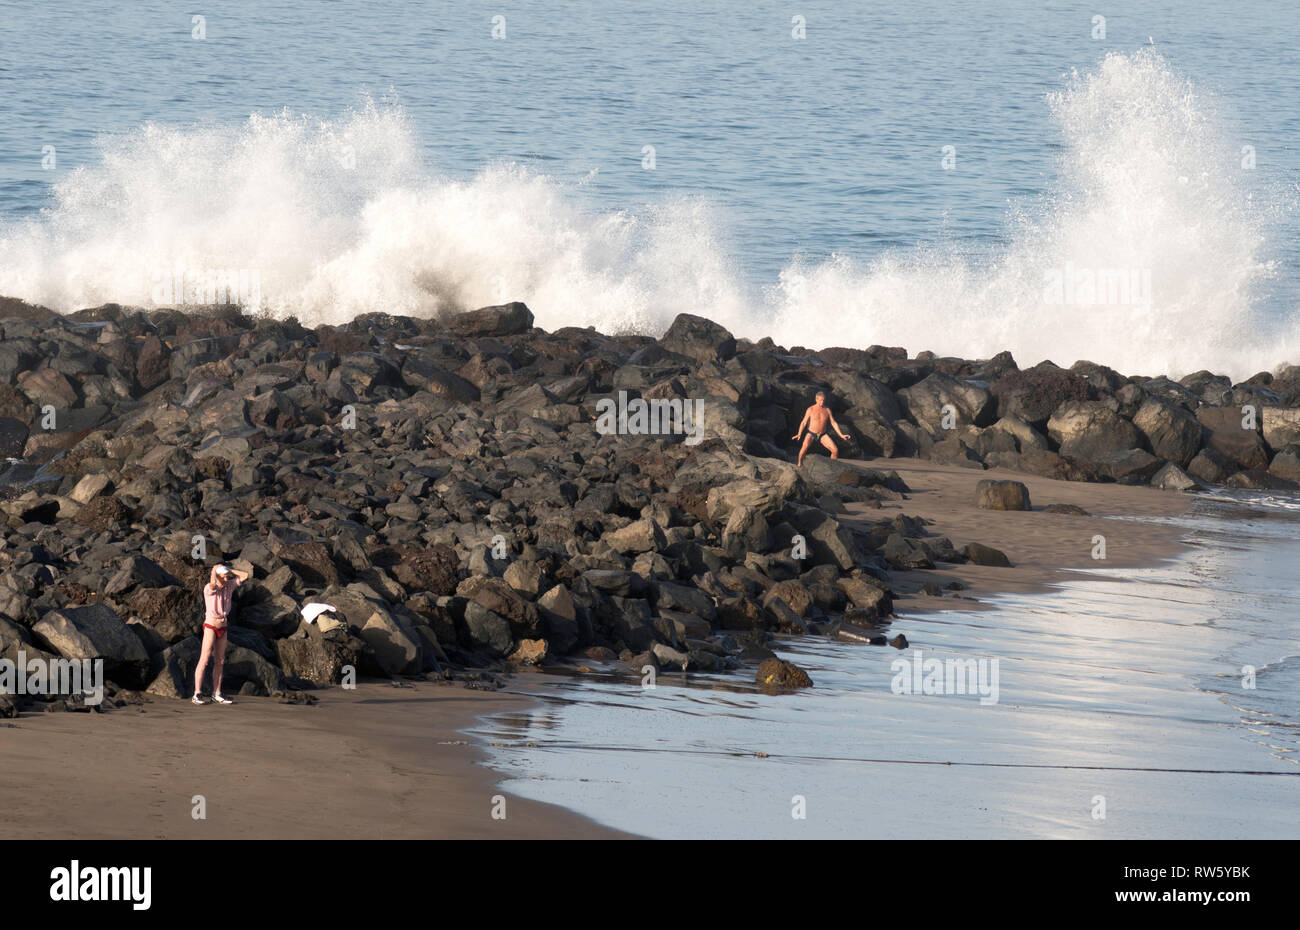 Les personnes exerçant sur la plage tandis que les vagues déferlent dans les rochers derrière, Costa Adeje, Tenerife, Canaries. Banque D'Images